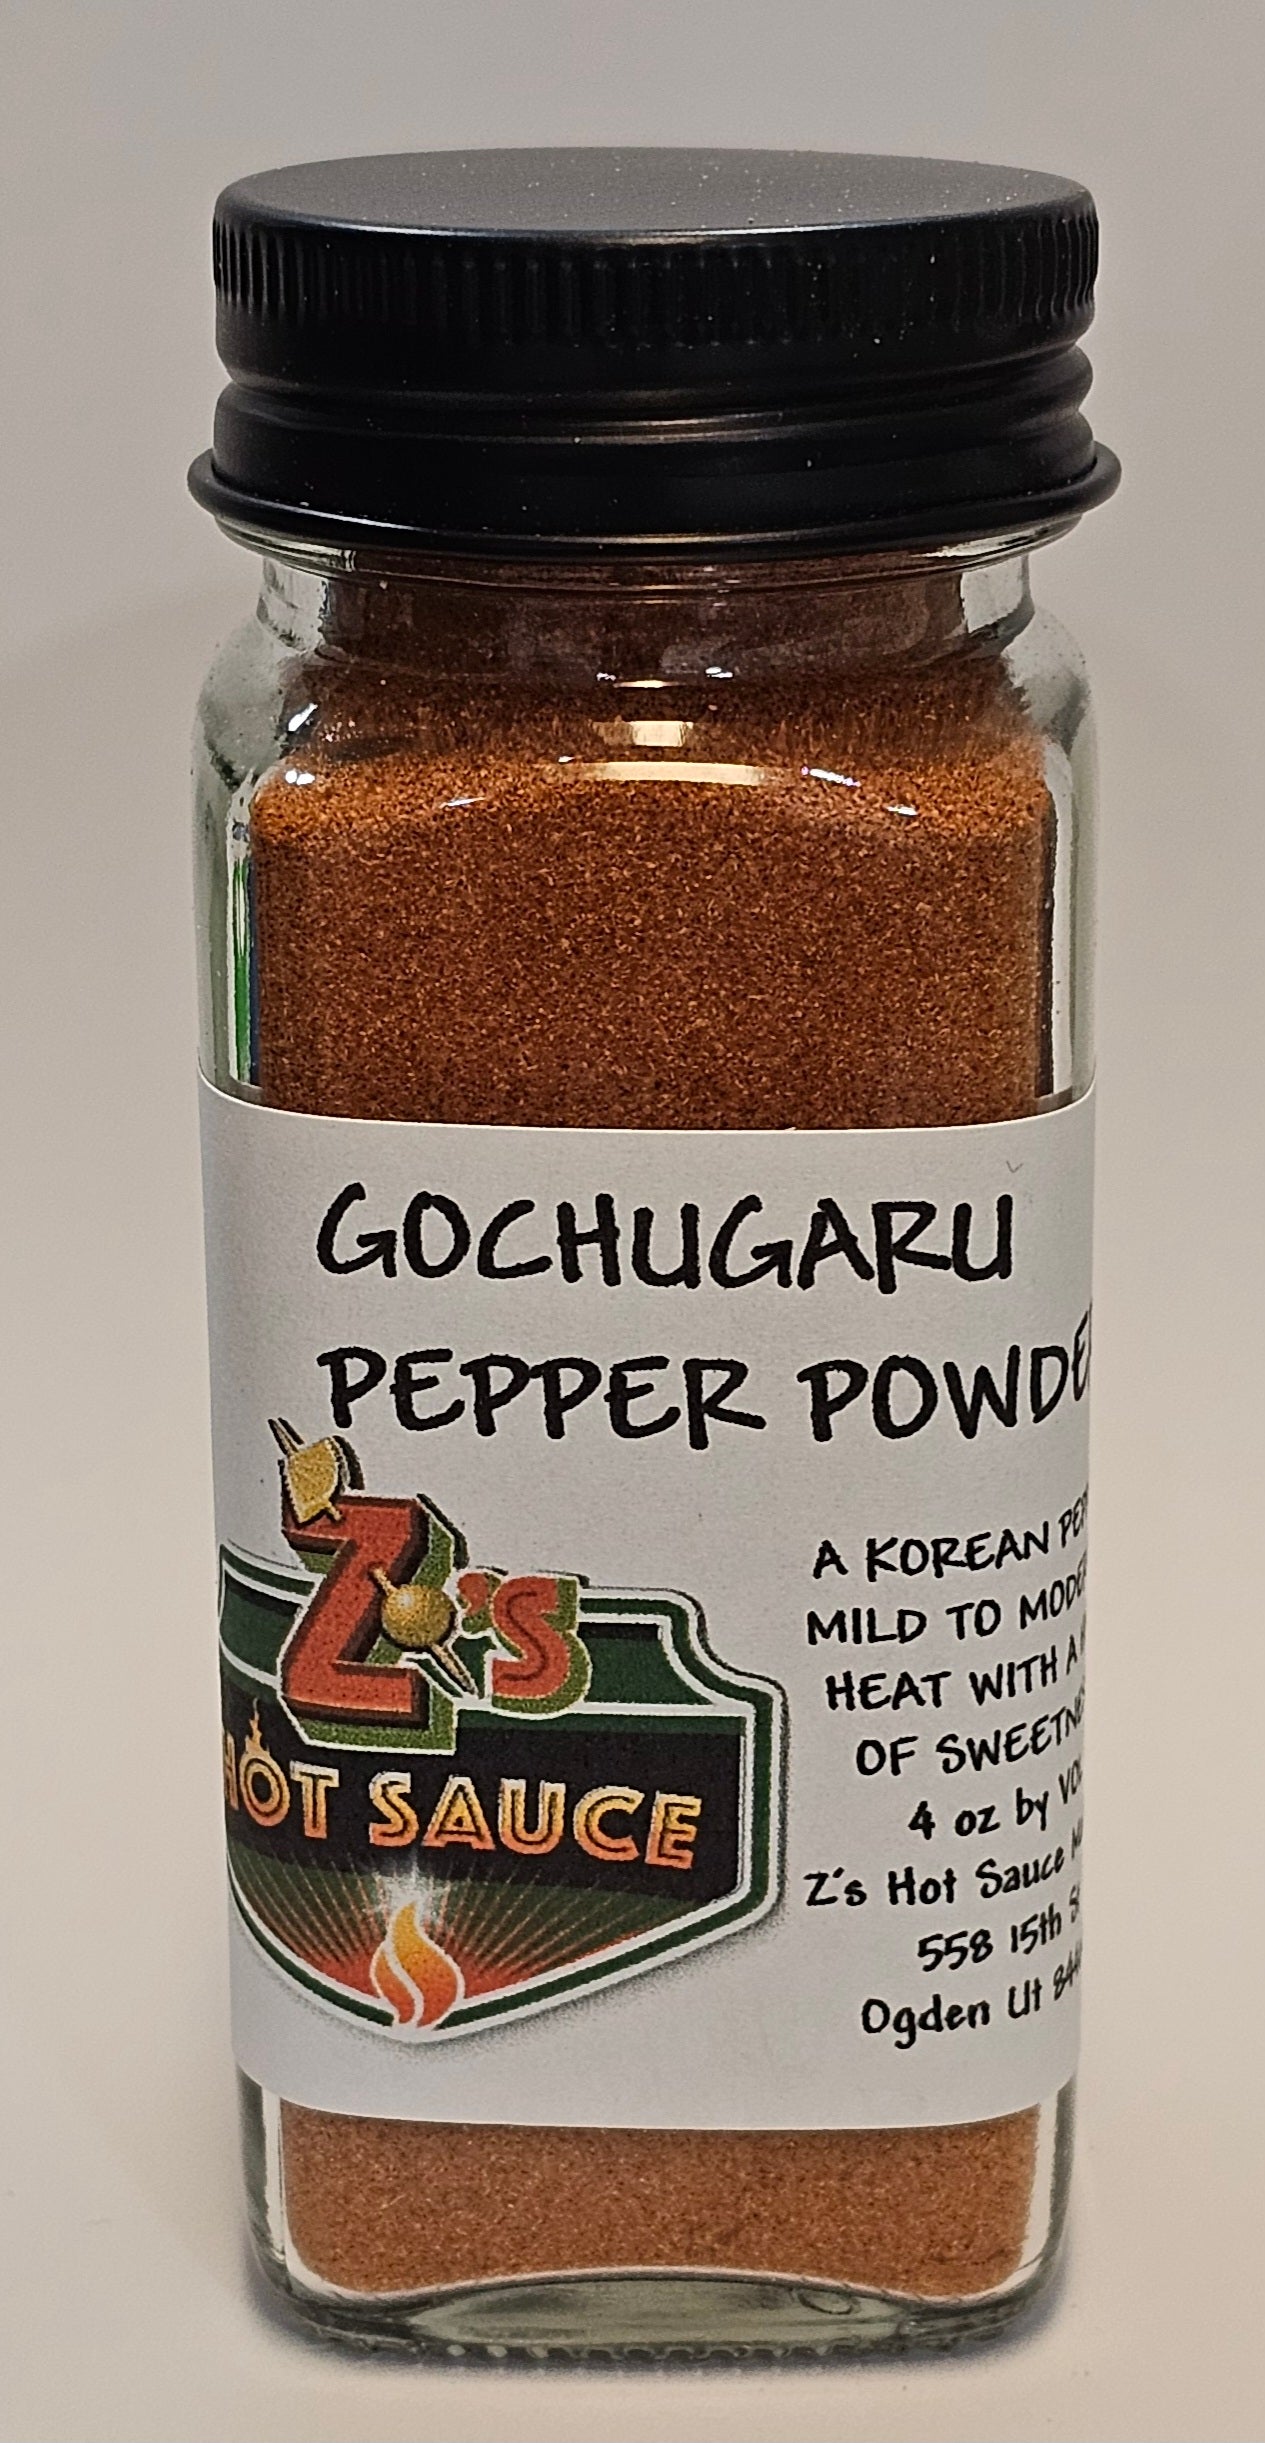 Gochugaru Pepper Powder.